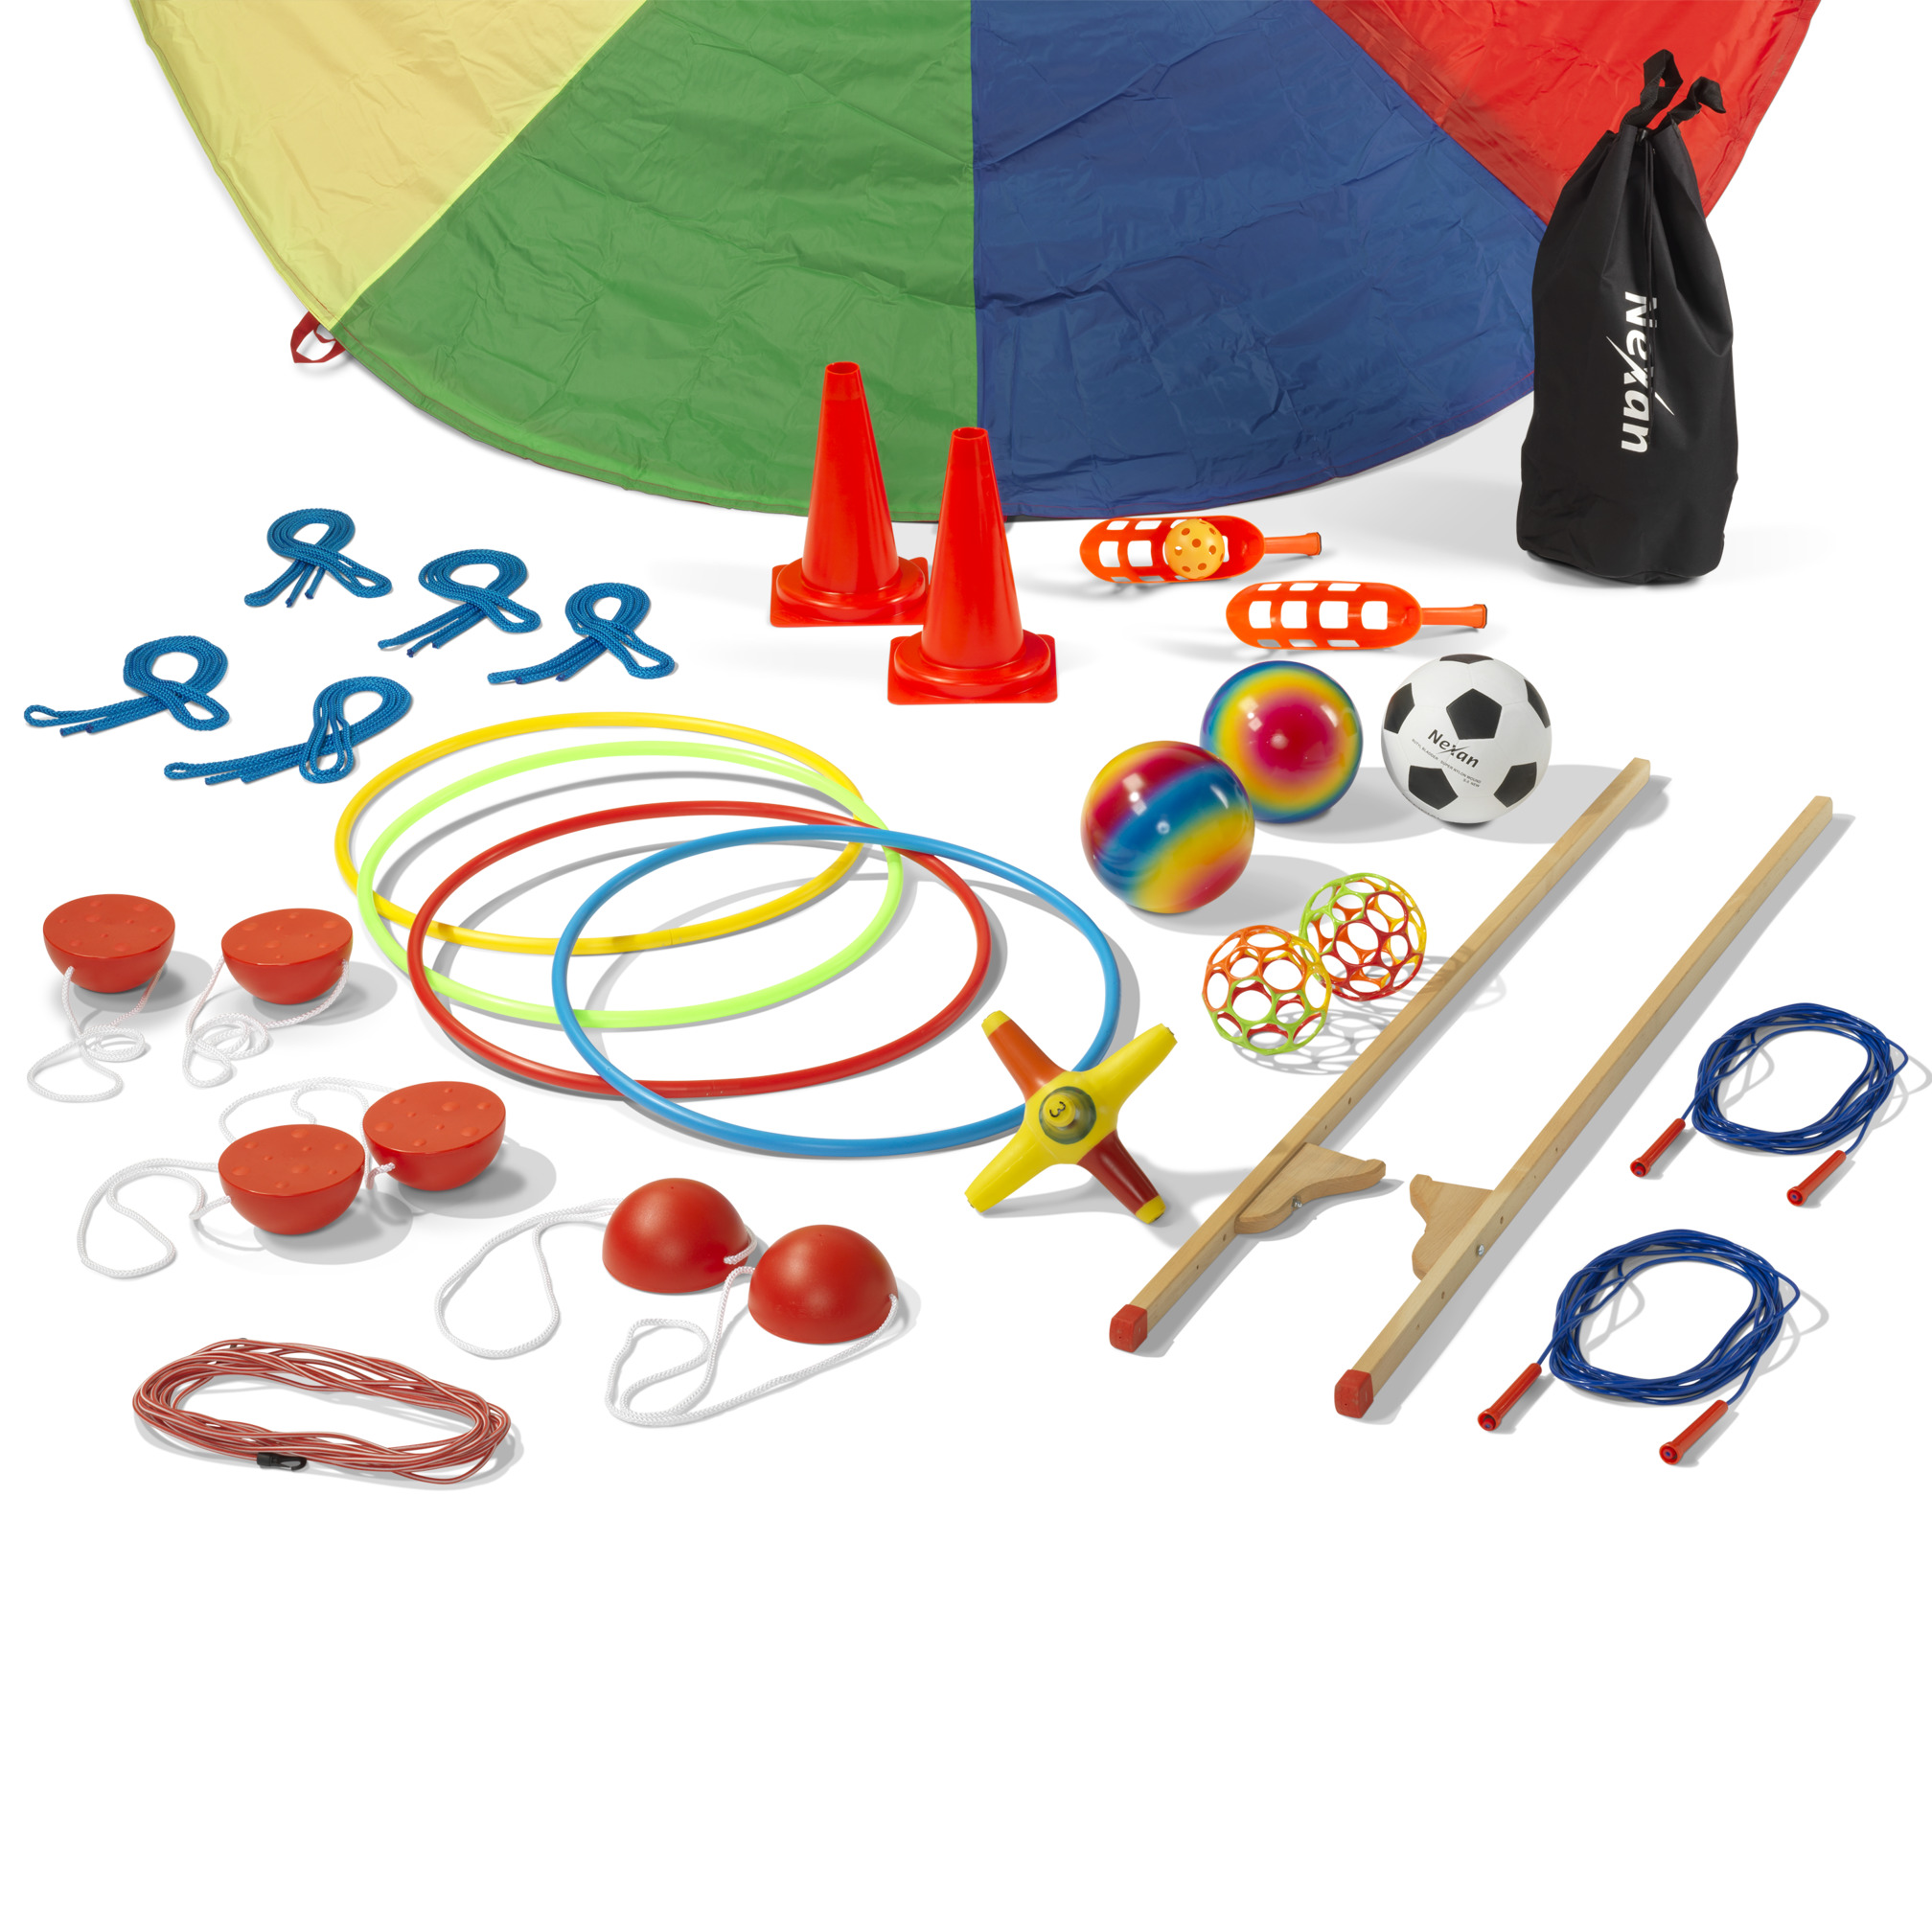 Vorteils-Set "Spielplatz" für Grundschule und Kindergarten